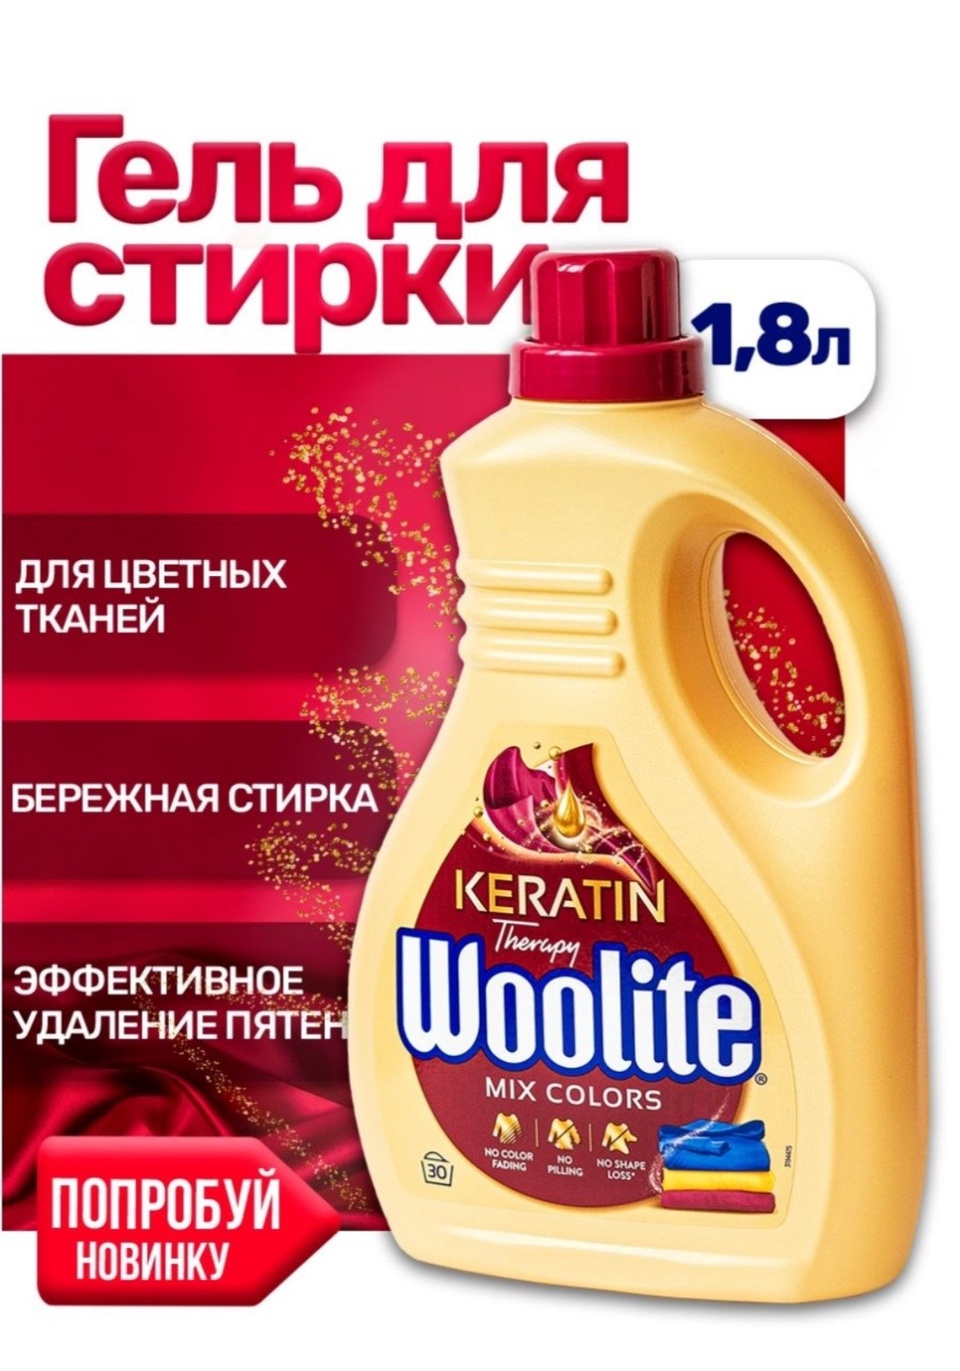 Жидкий порошок Woolite Польша - 700 ₽, заказать онлайн.